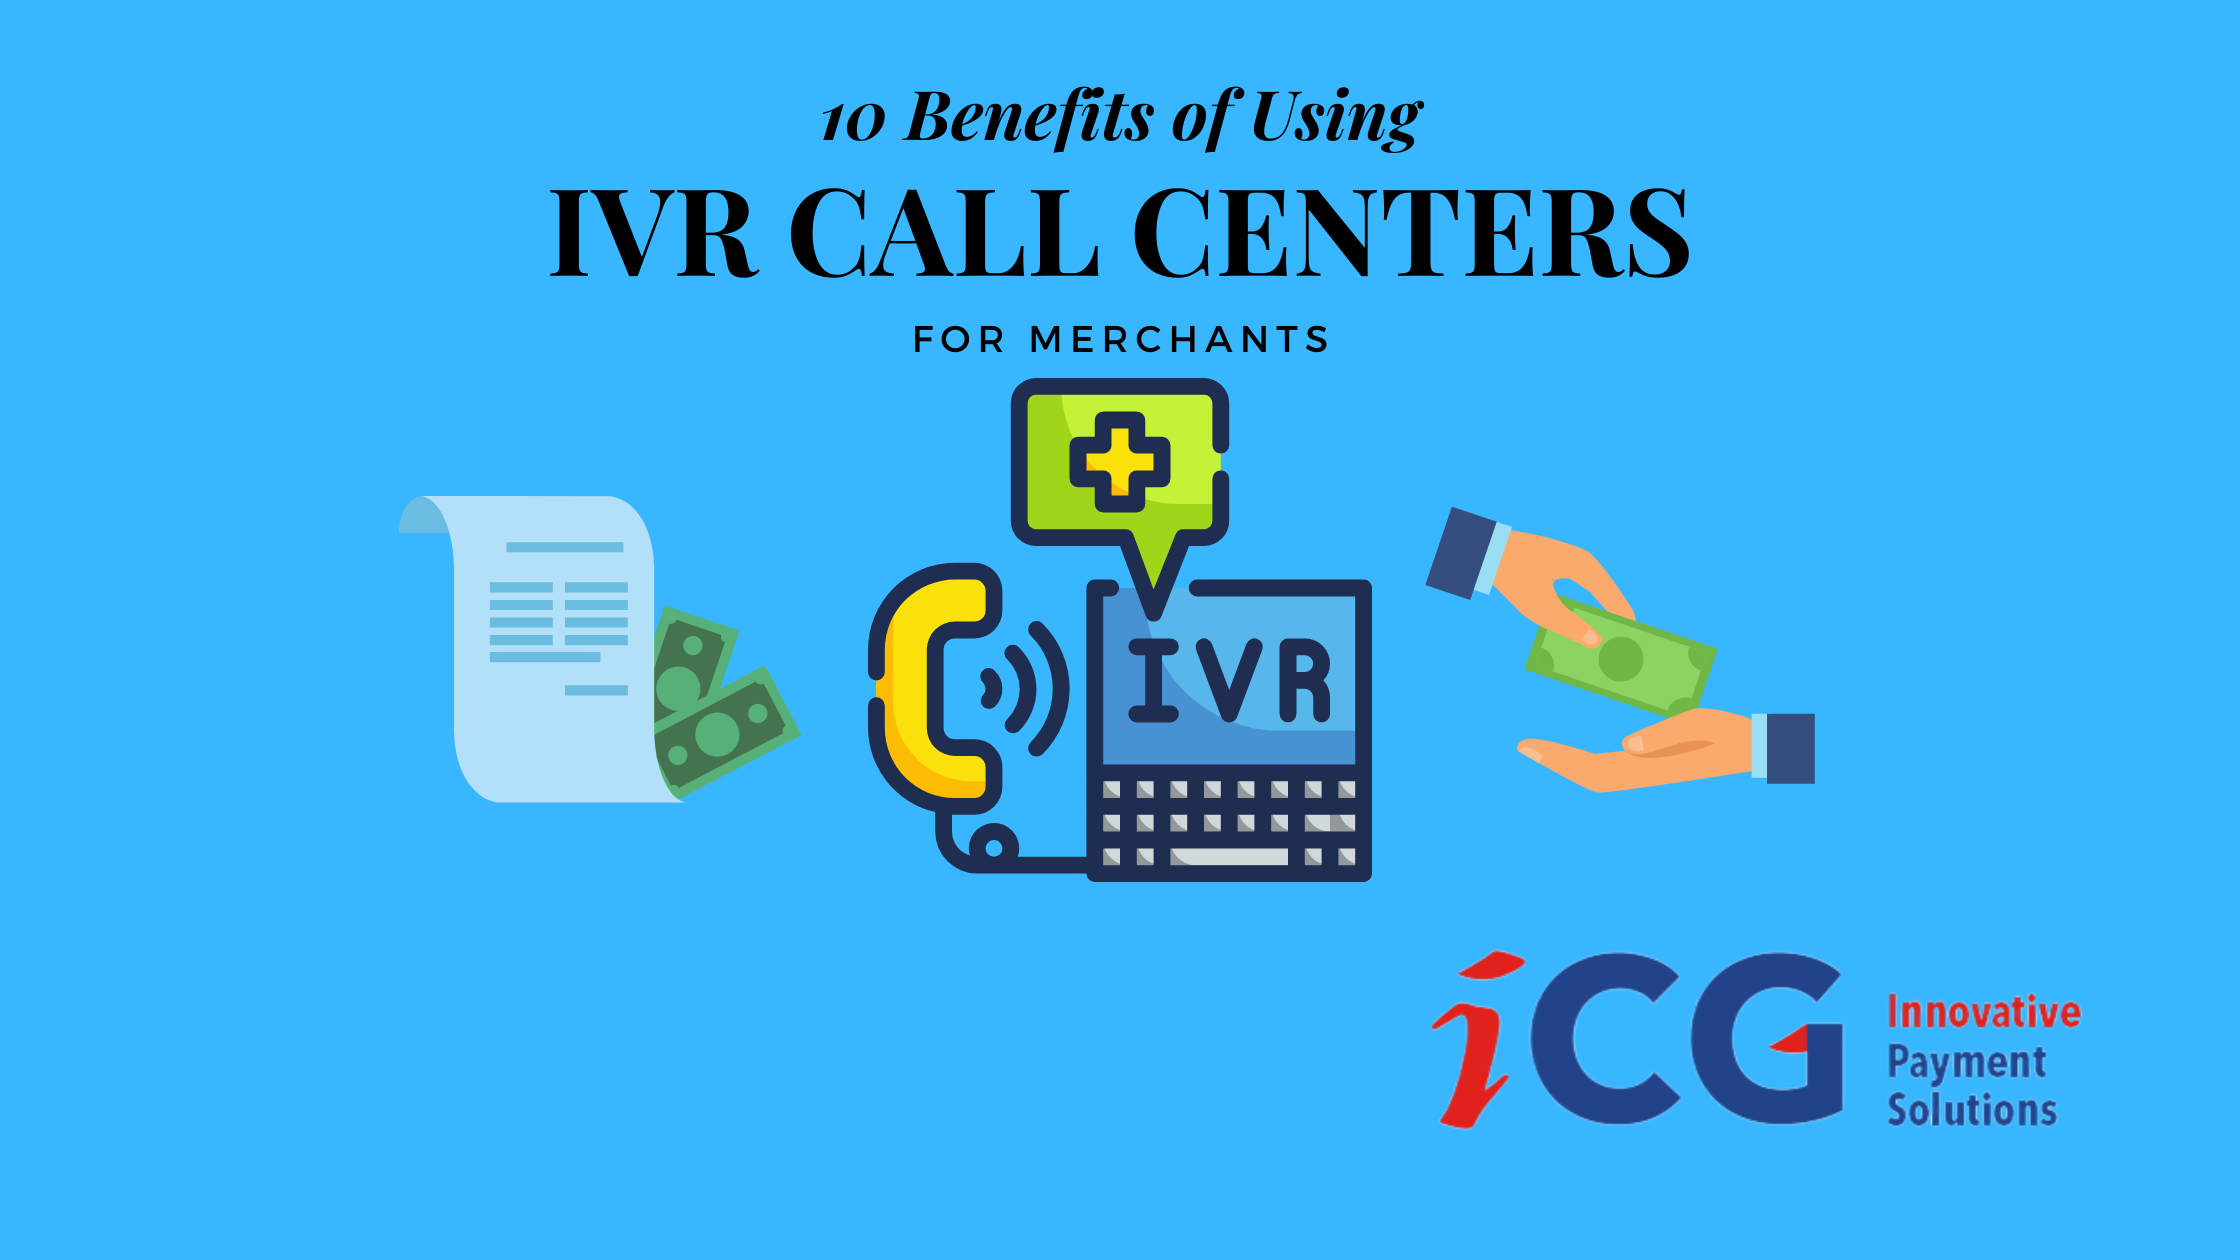 Using an IVR Call Center for Merchants